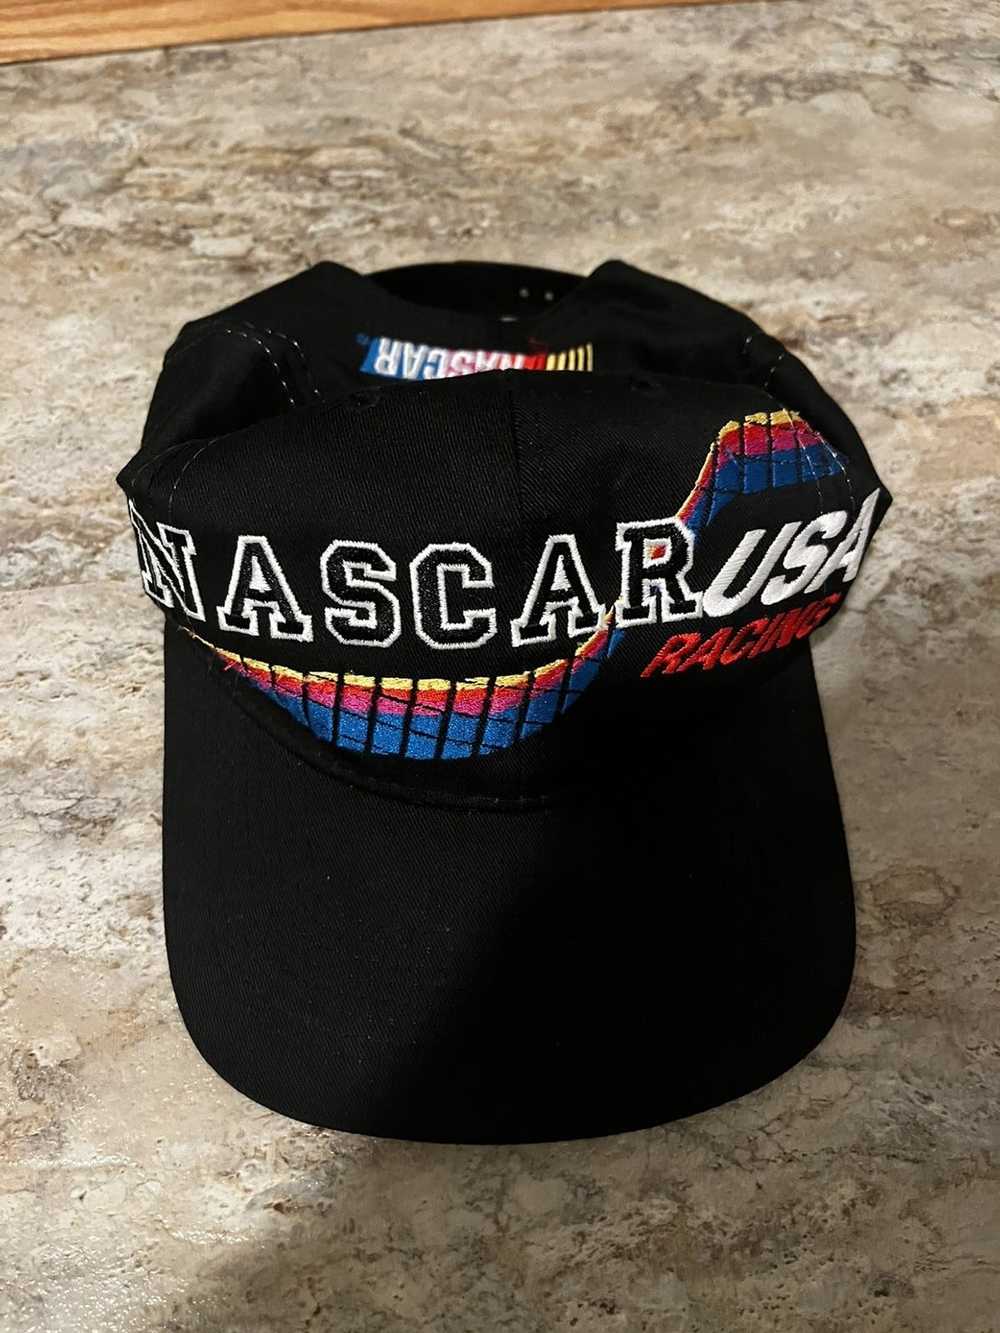 NASCAR × Vintage NASCAR racing SnapBack hat - image 1